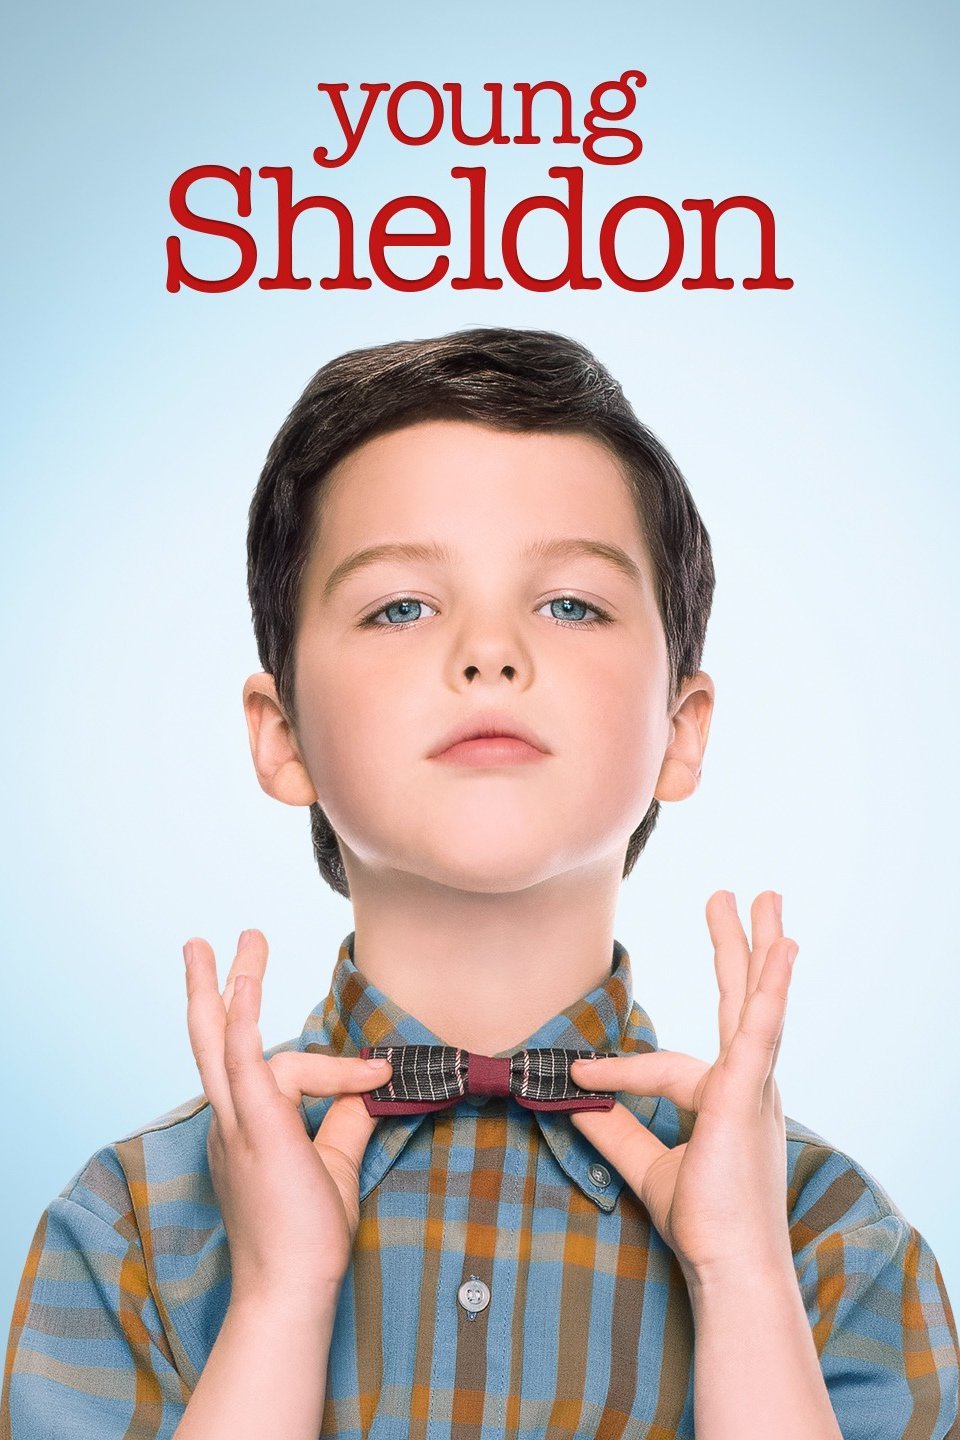 Young Sheldon - Wikipedia